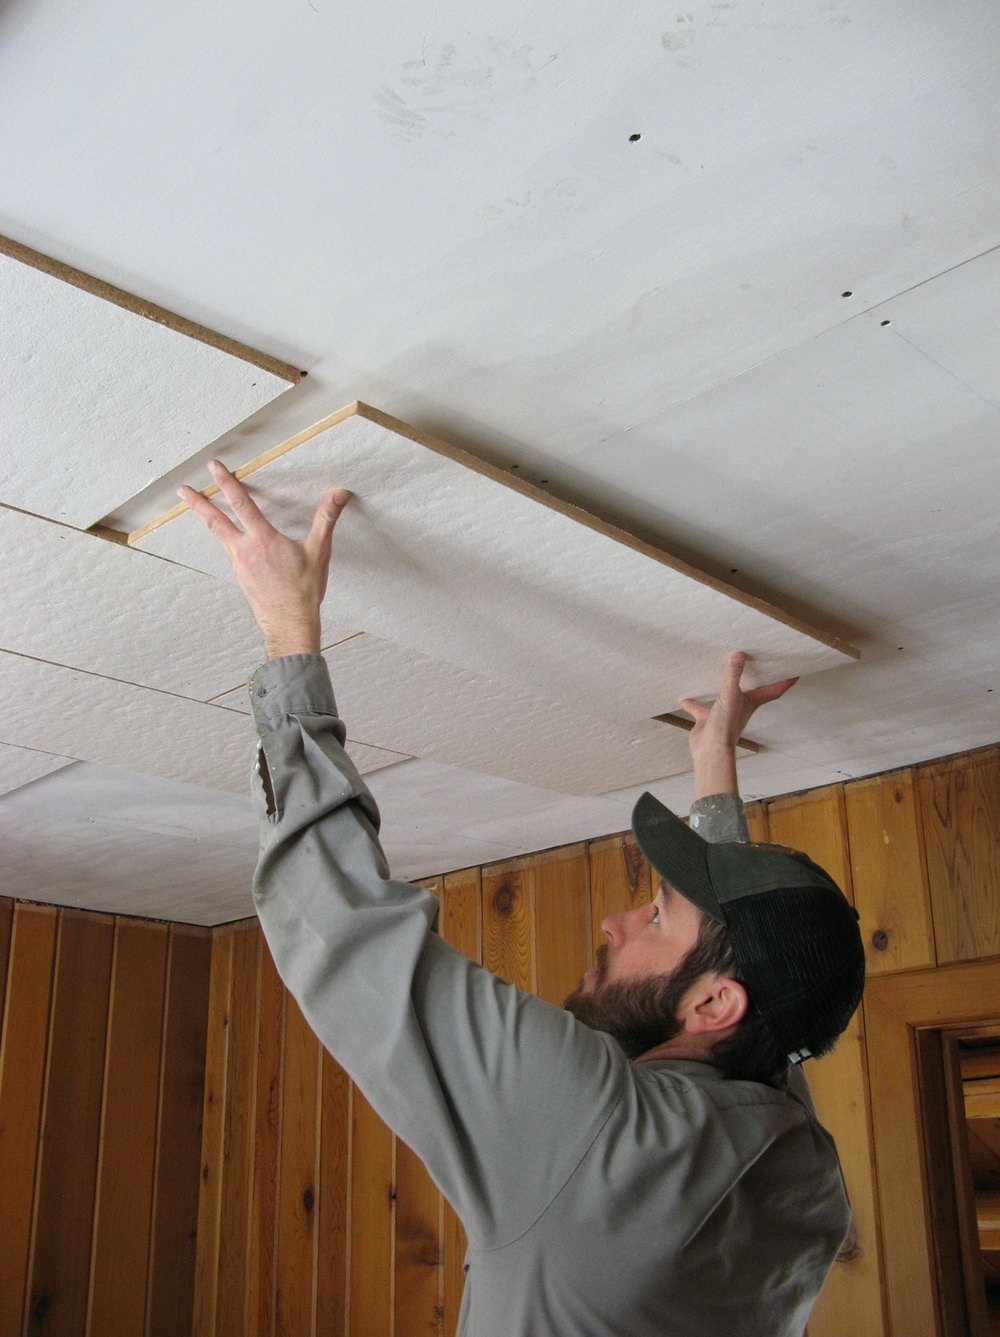 Celotex Ceiling Tiles Asbestos